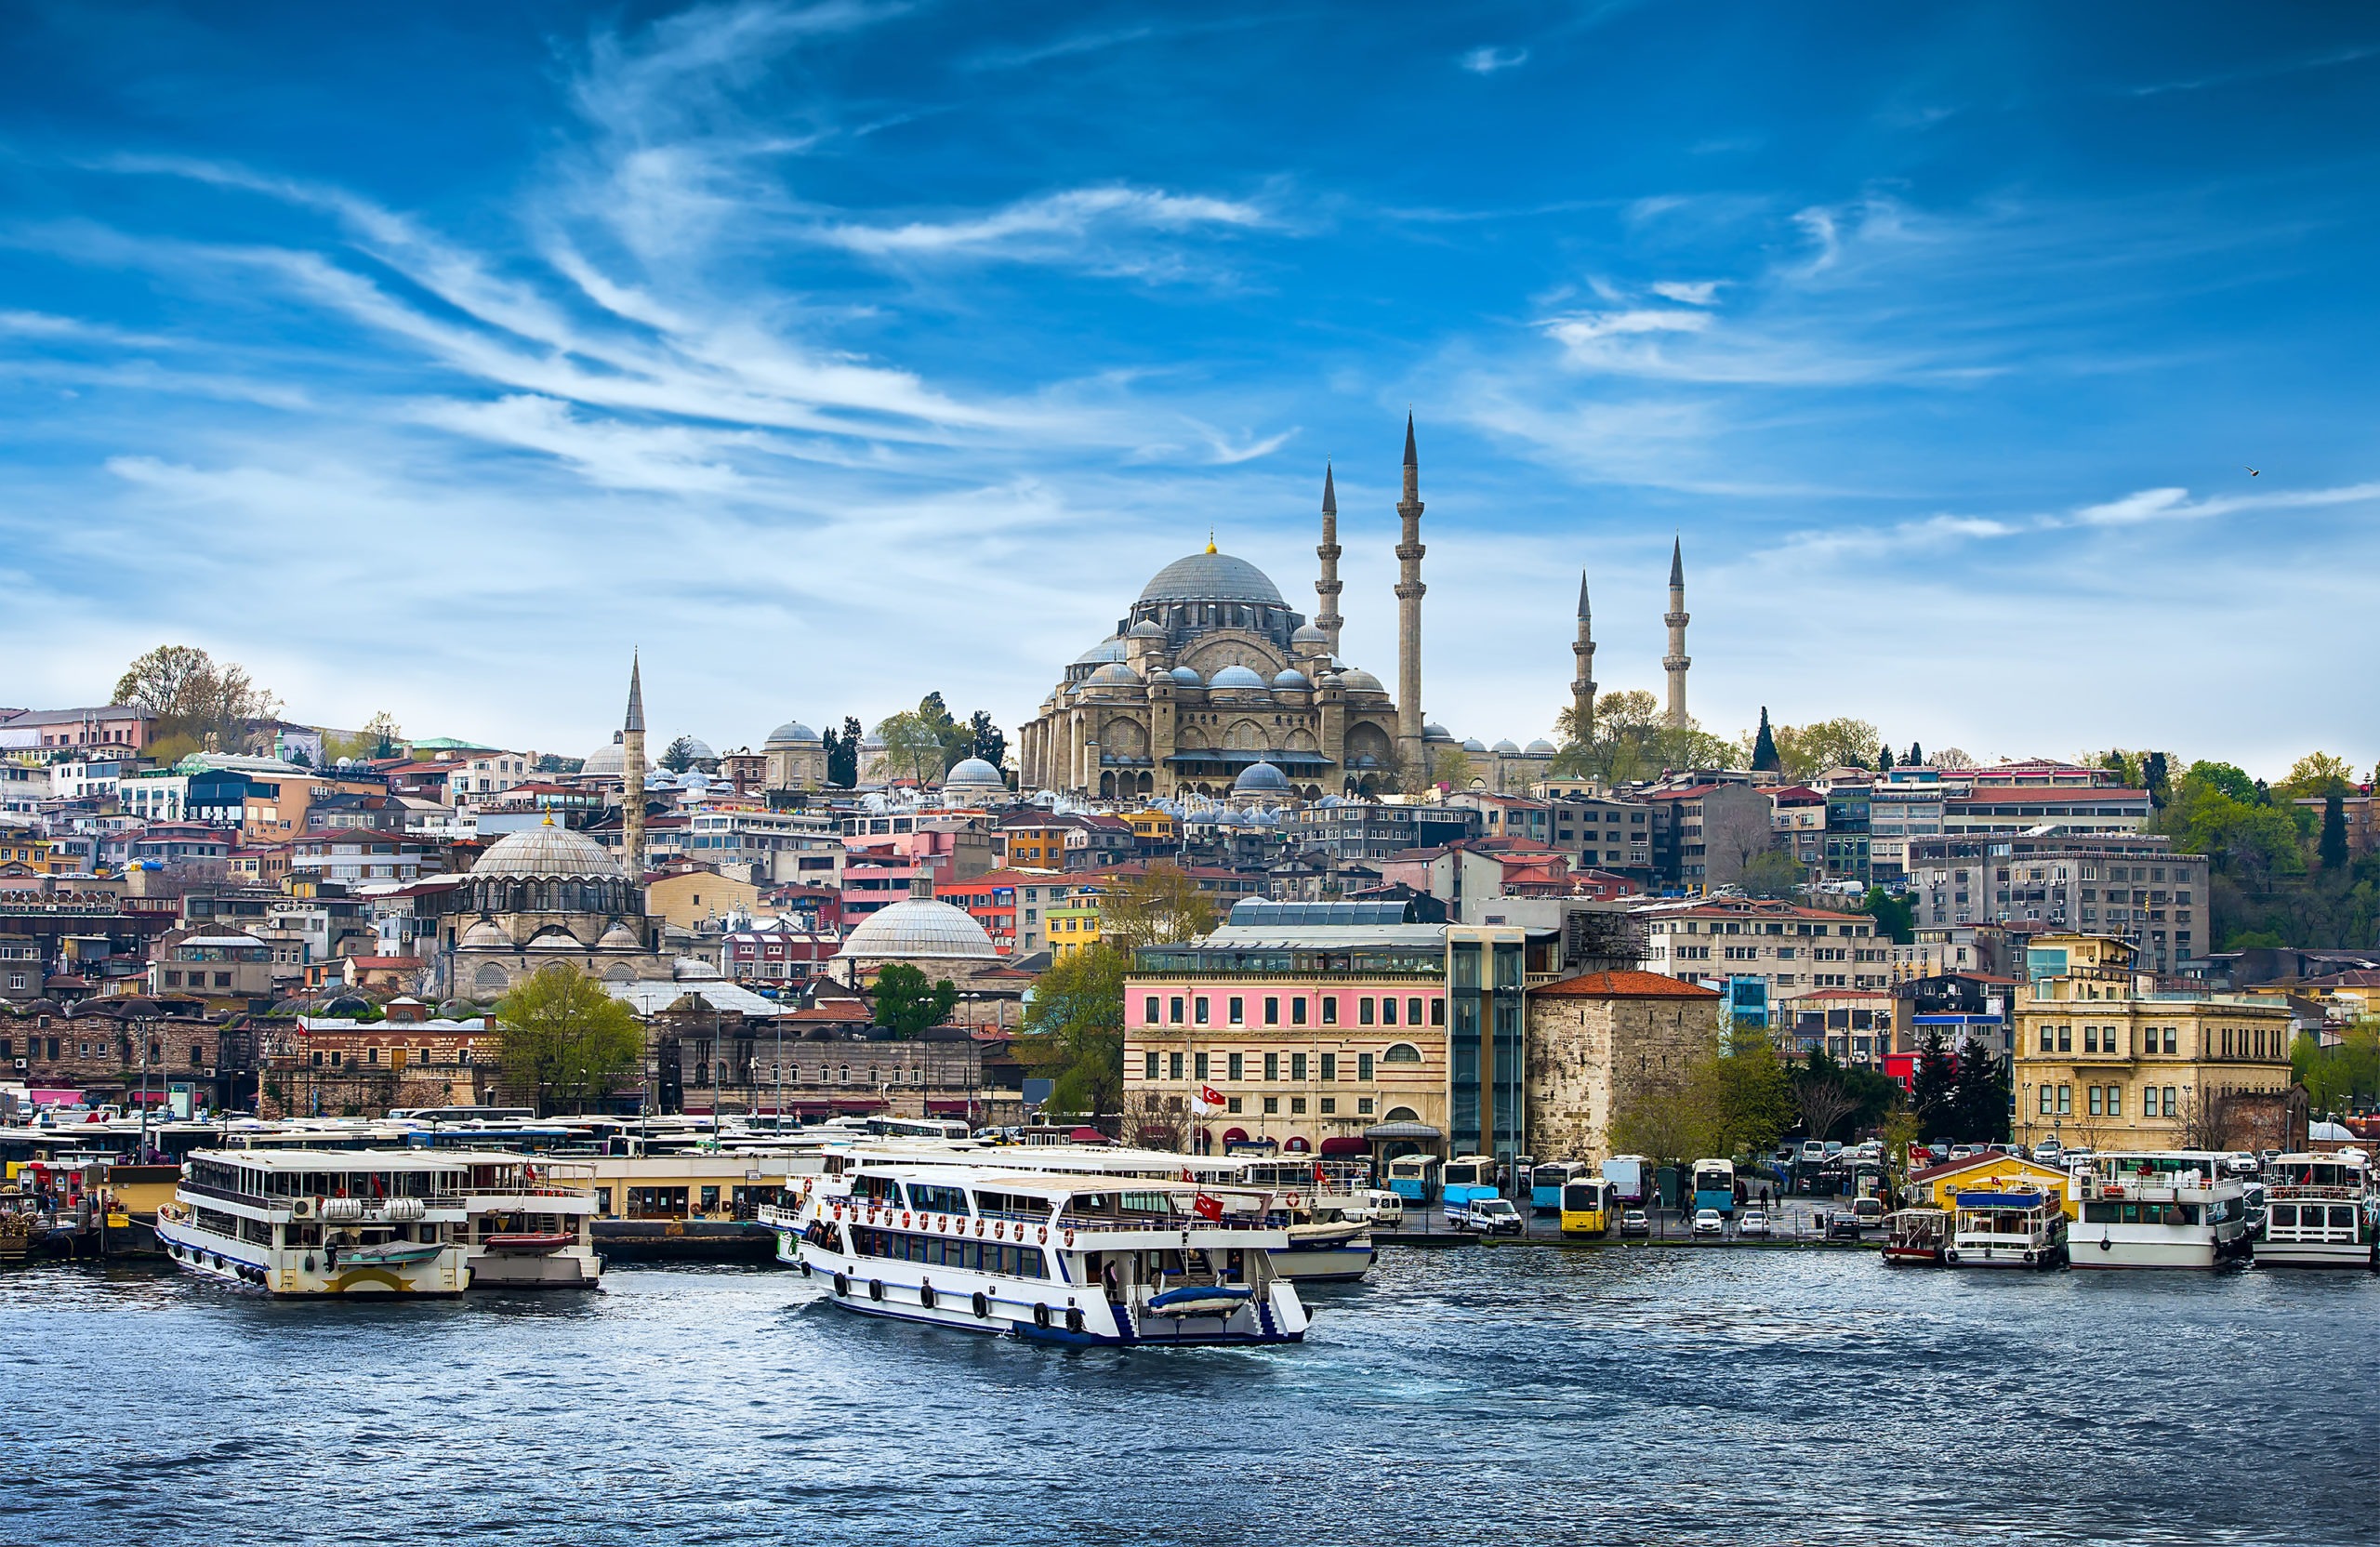 Image of Istanbul, Turkey